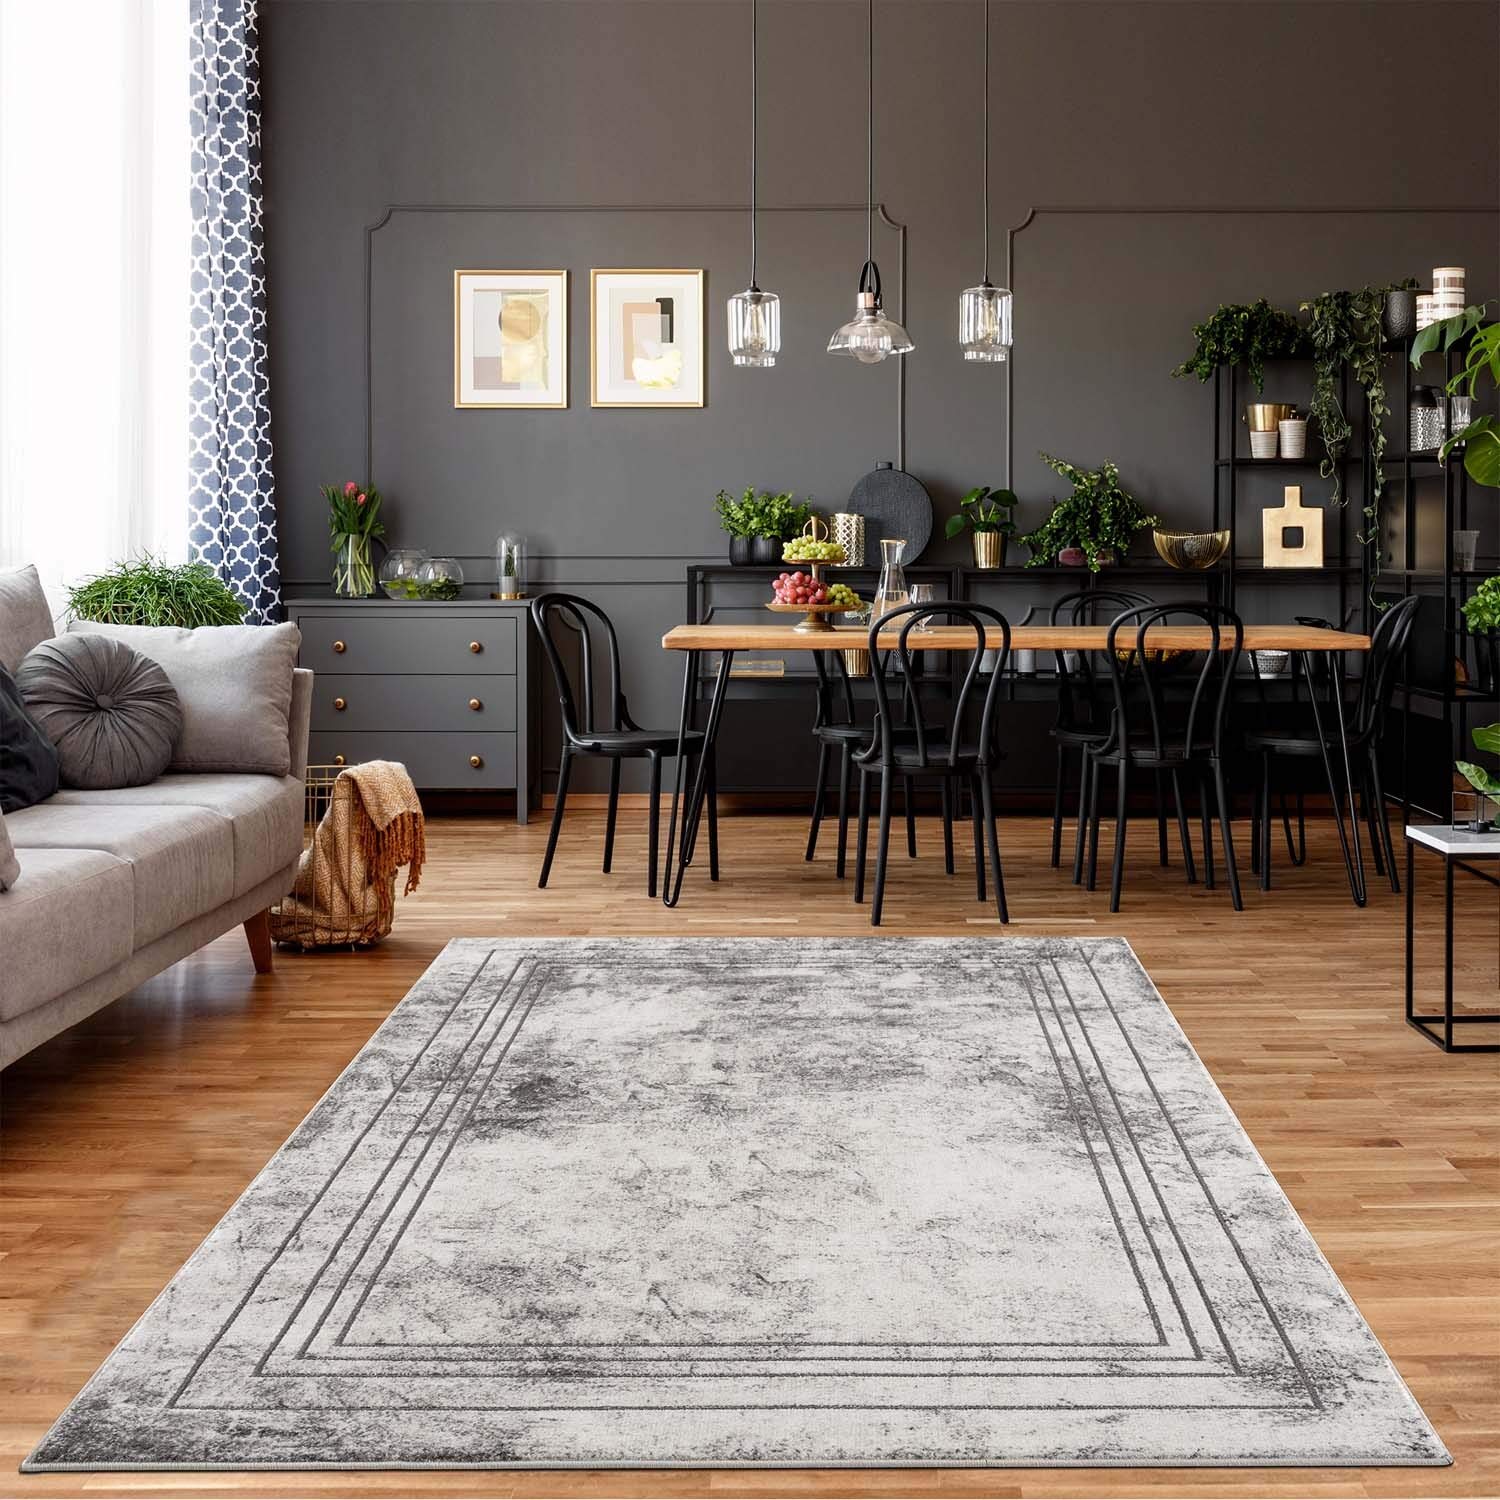 carpet city Teppich Wohnzimmer Bordüre - 80x150 cm Grau Meliert - Moderne Teppiche Kurzflor